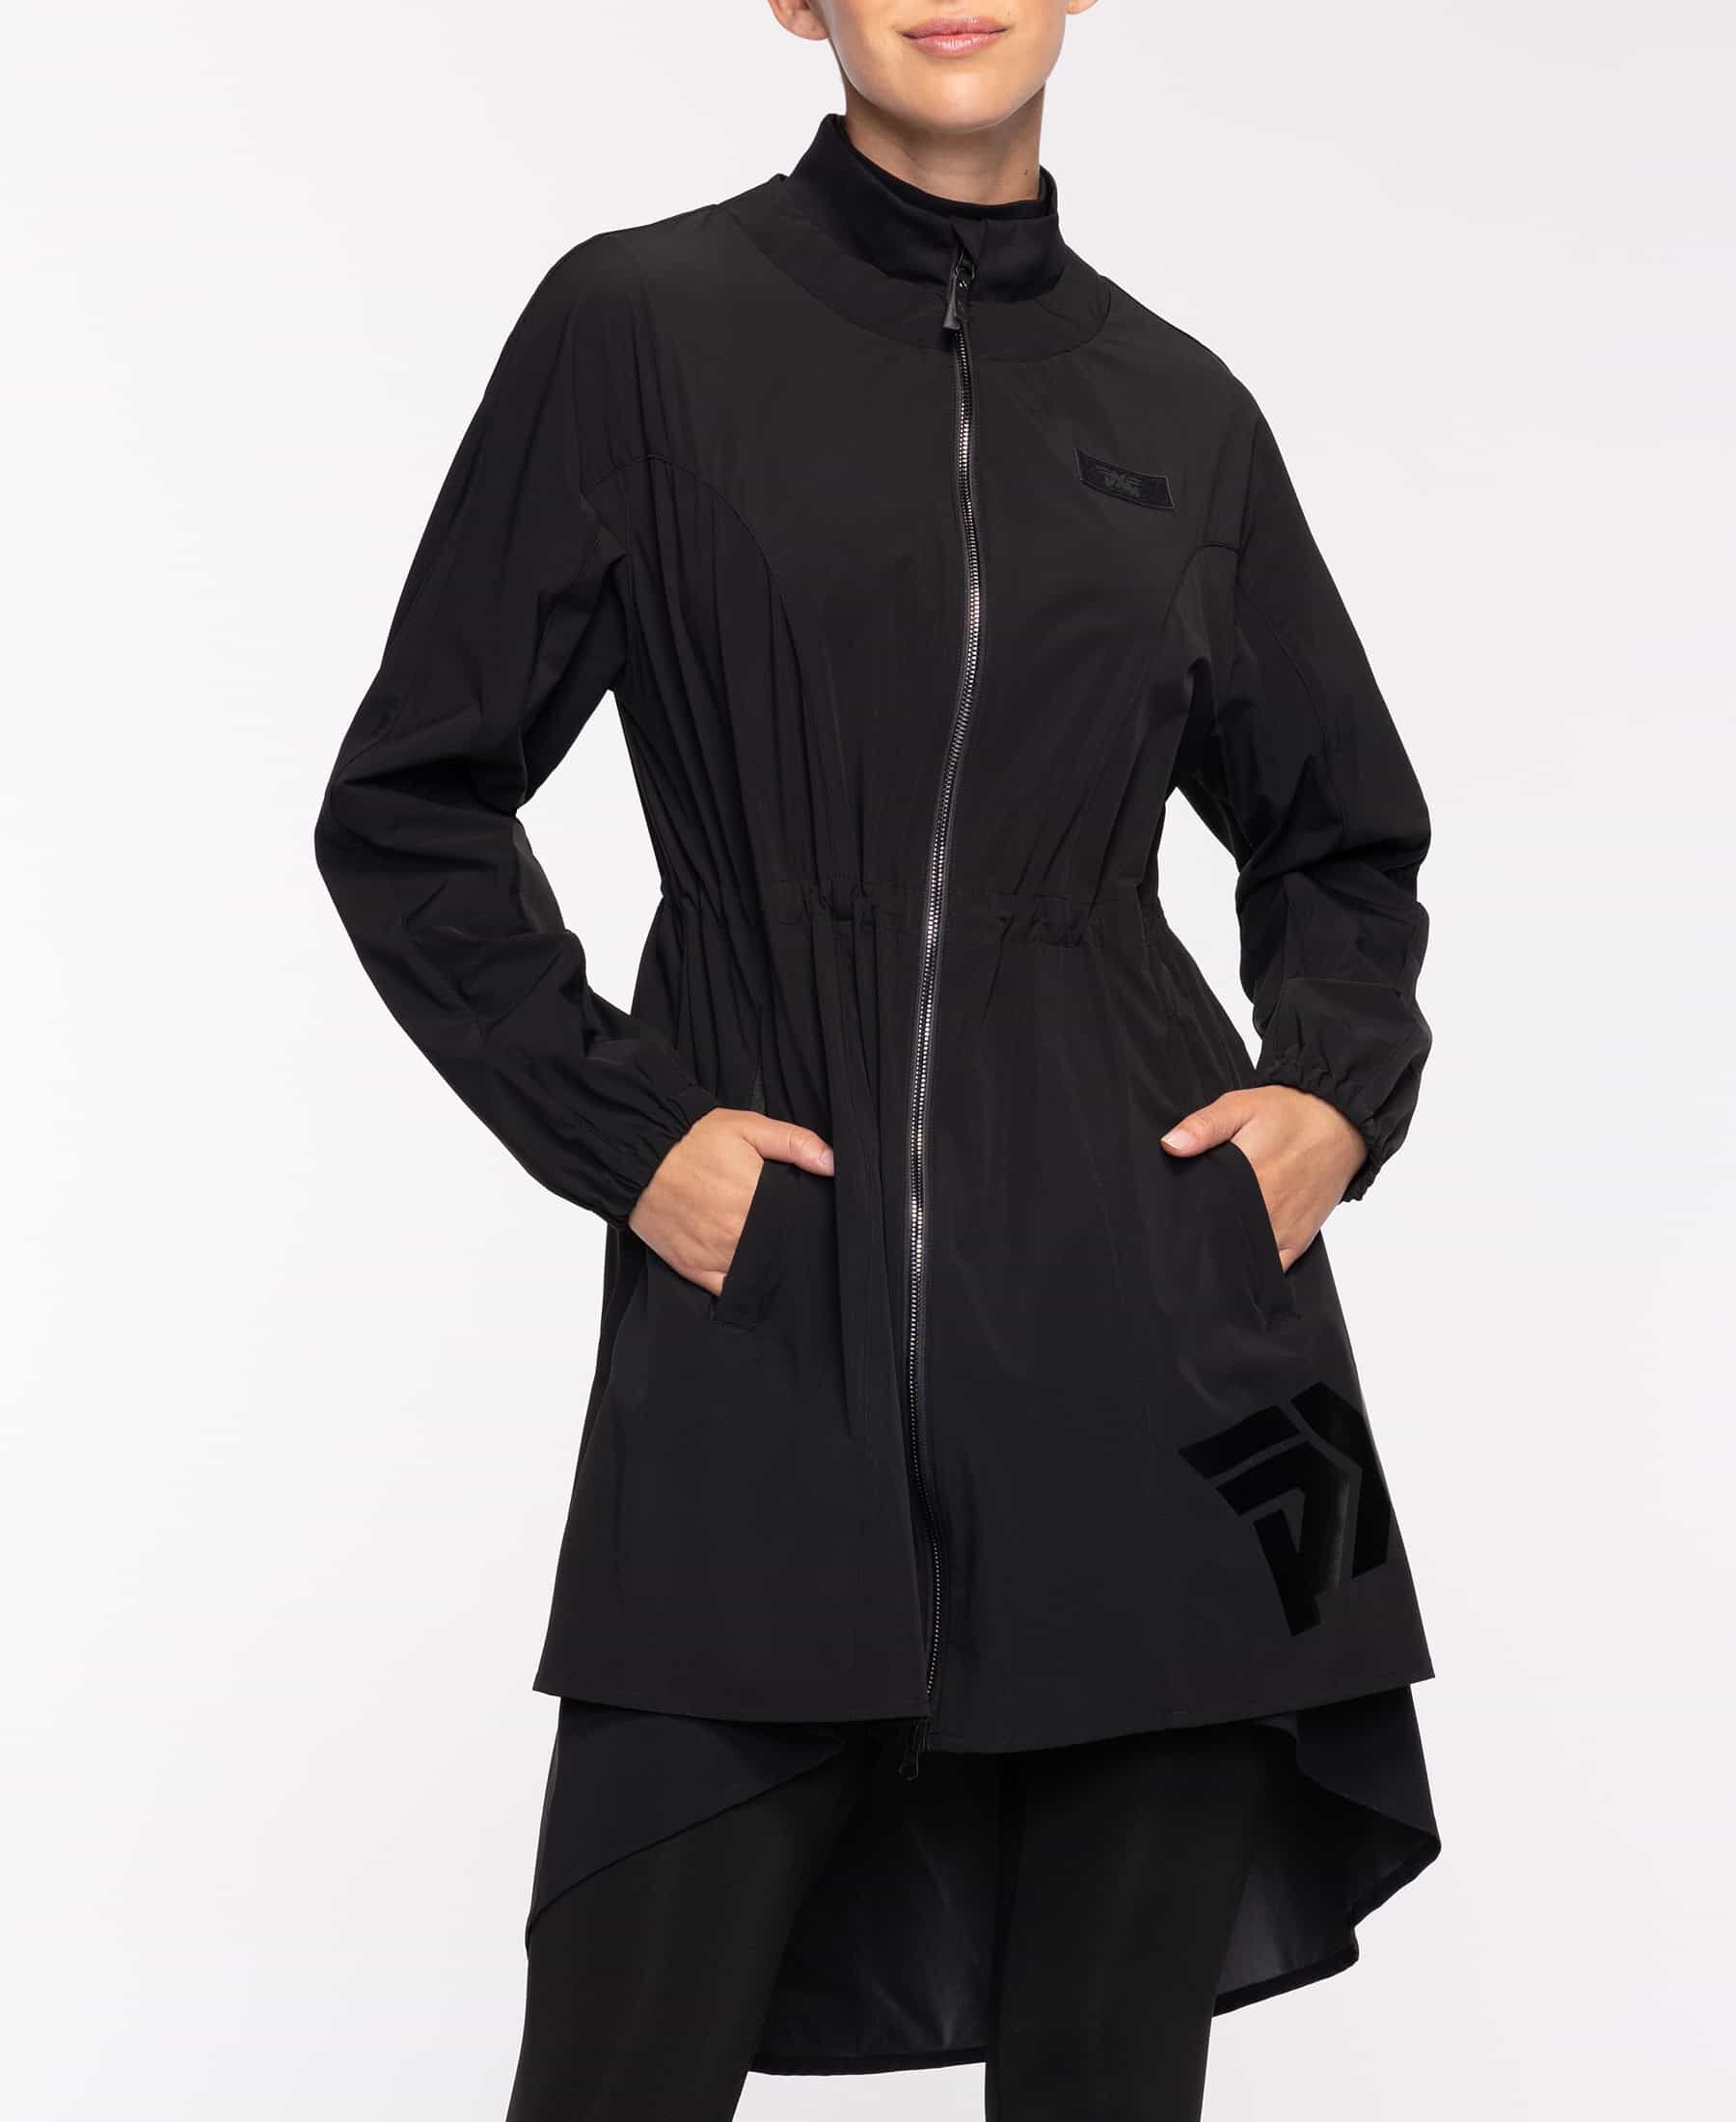 Buy Women's Full Length High-Neck Jacket | PXG